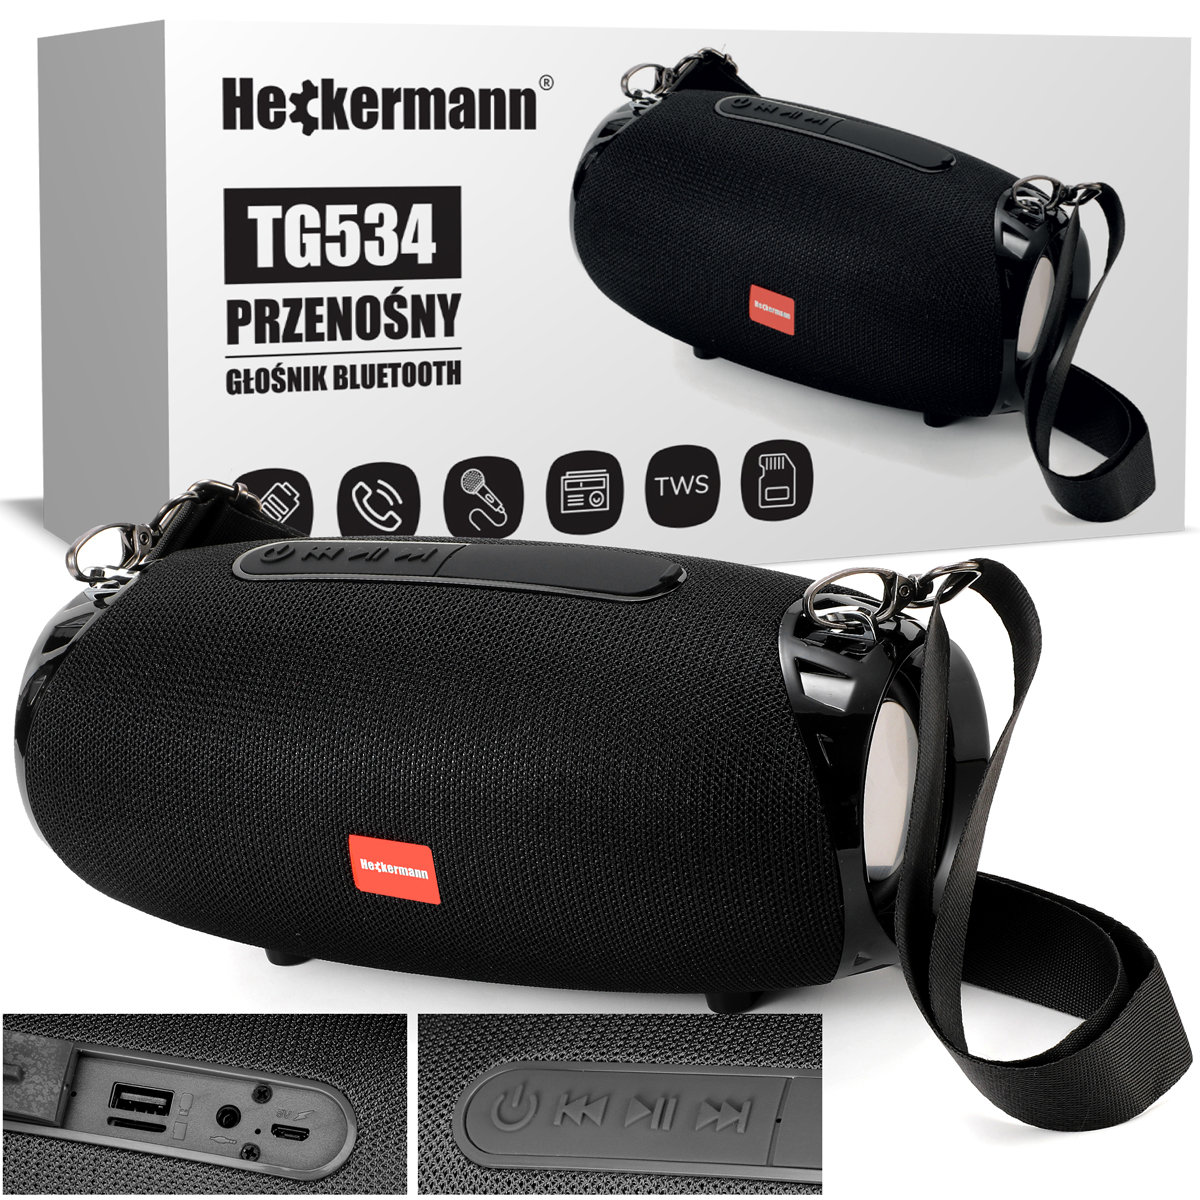 Zdjęcia - Głośnik przenośny  Bluetooth Heckermann Tg534